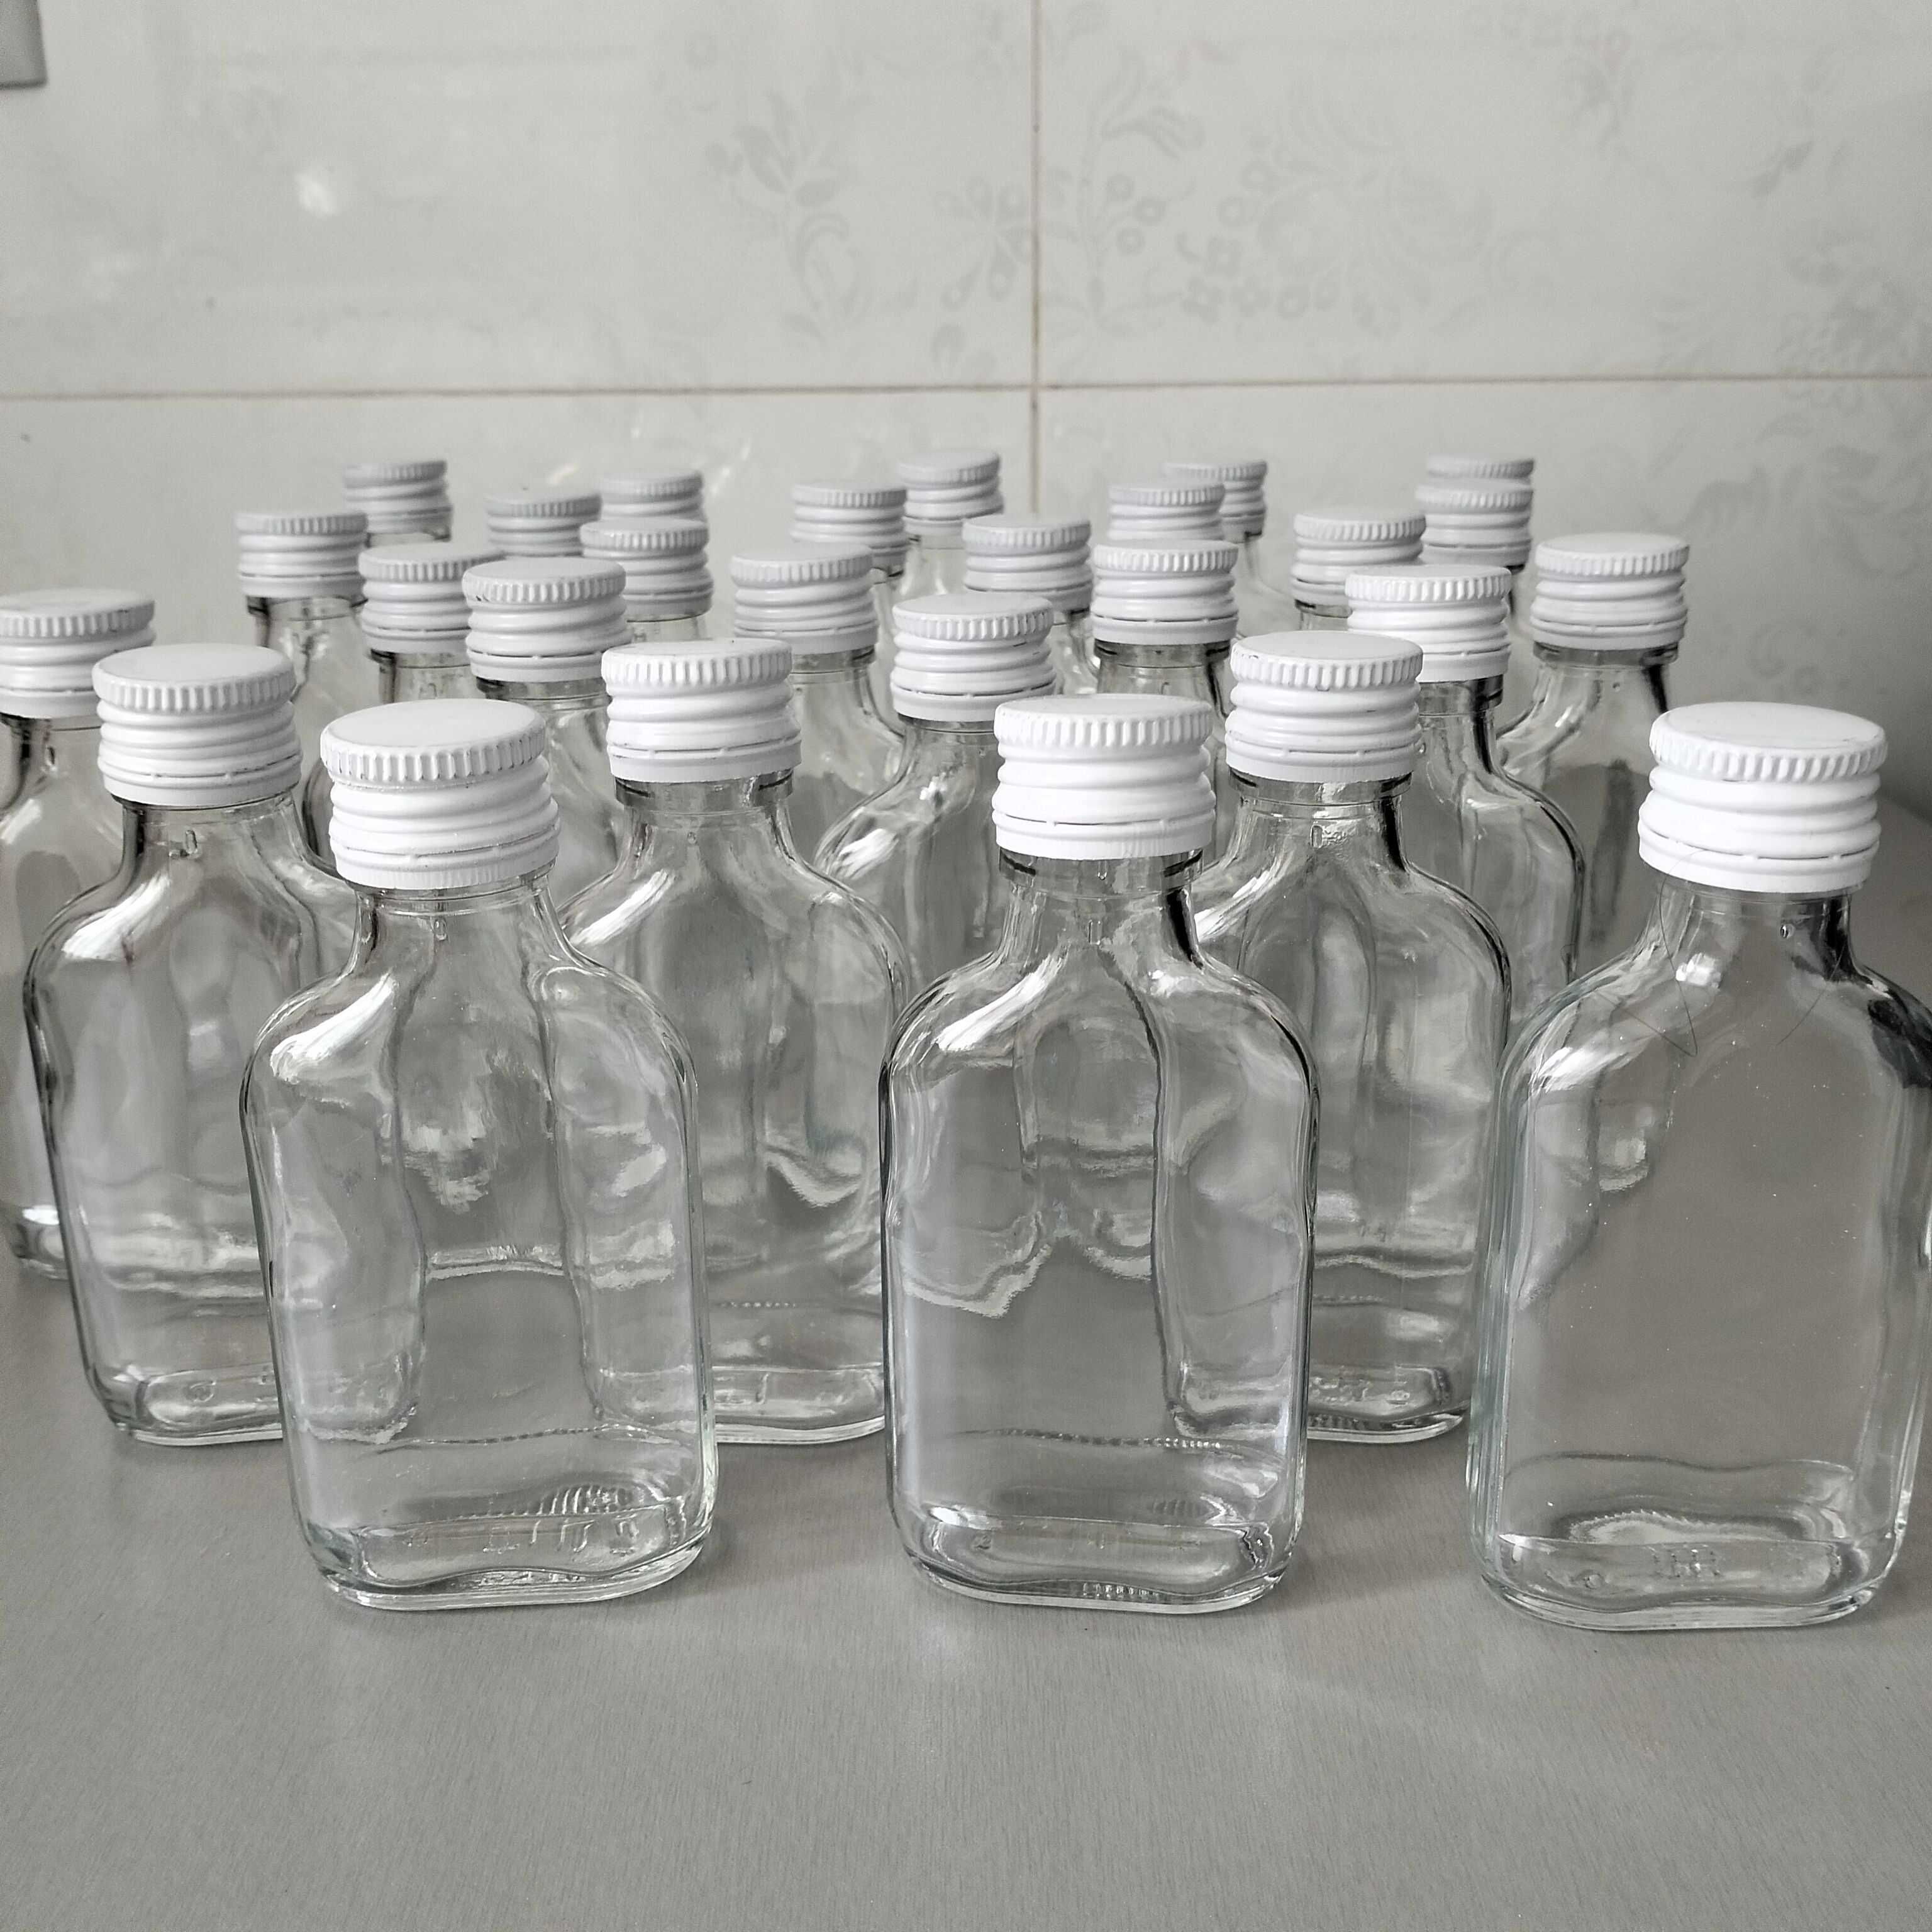 Butelki 100 ml setki 15 sztuk plus zakrętki białe.